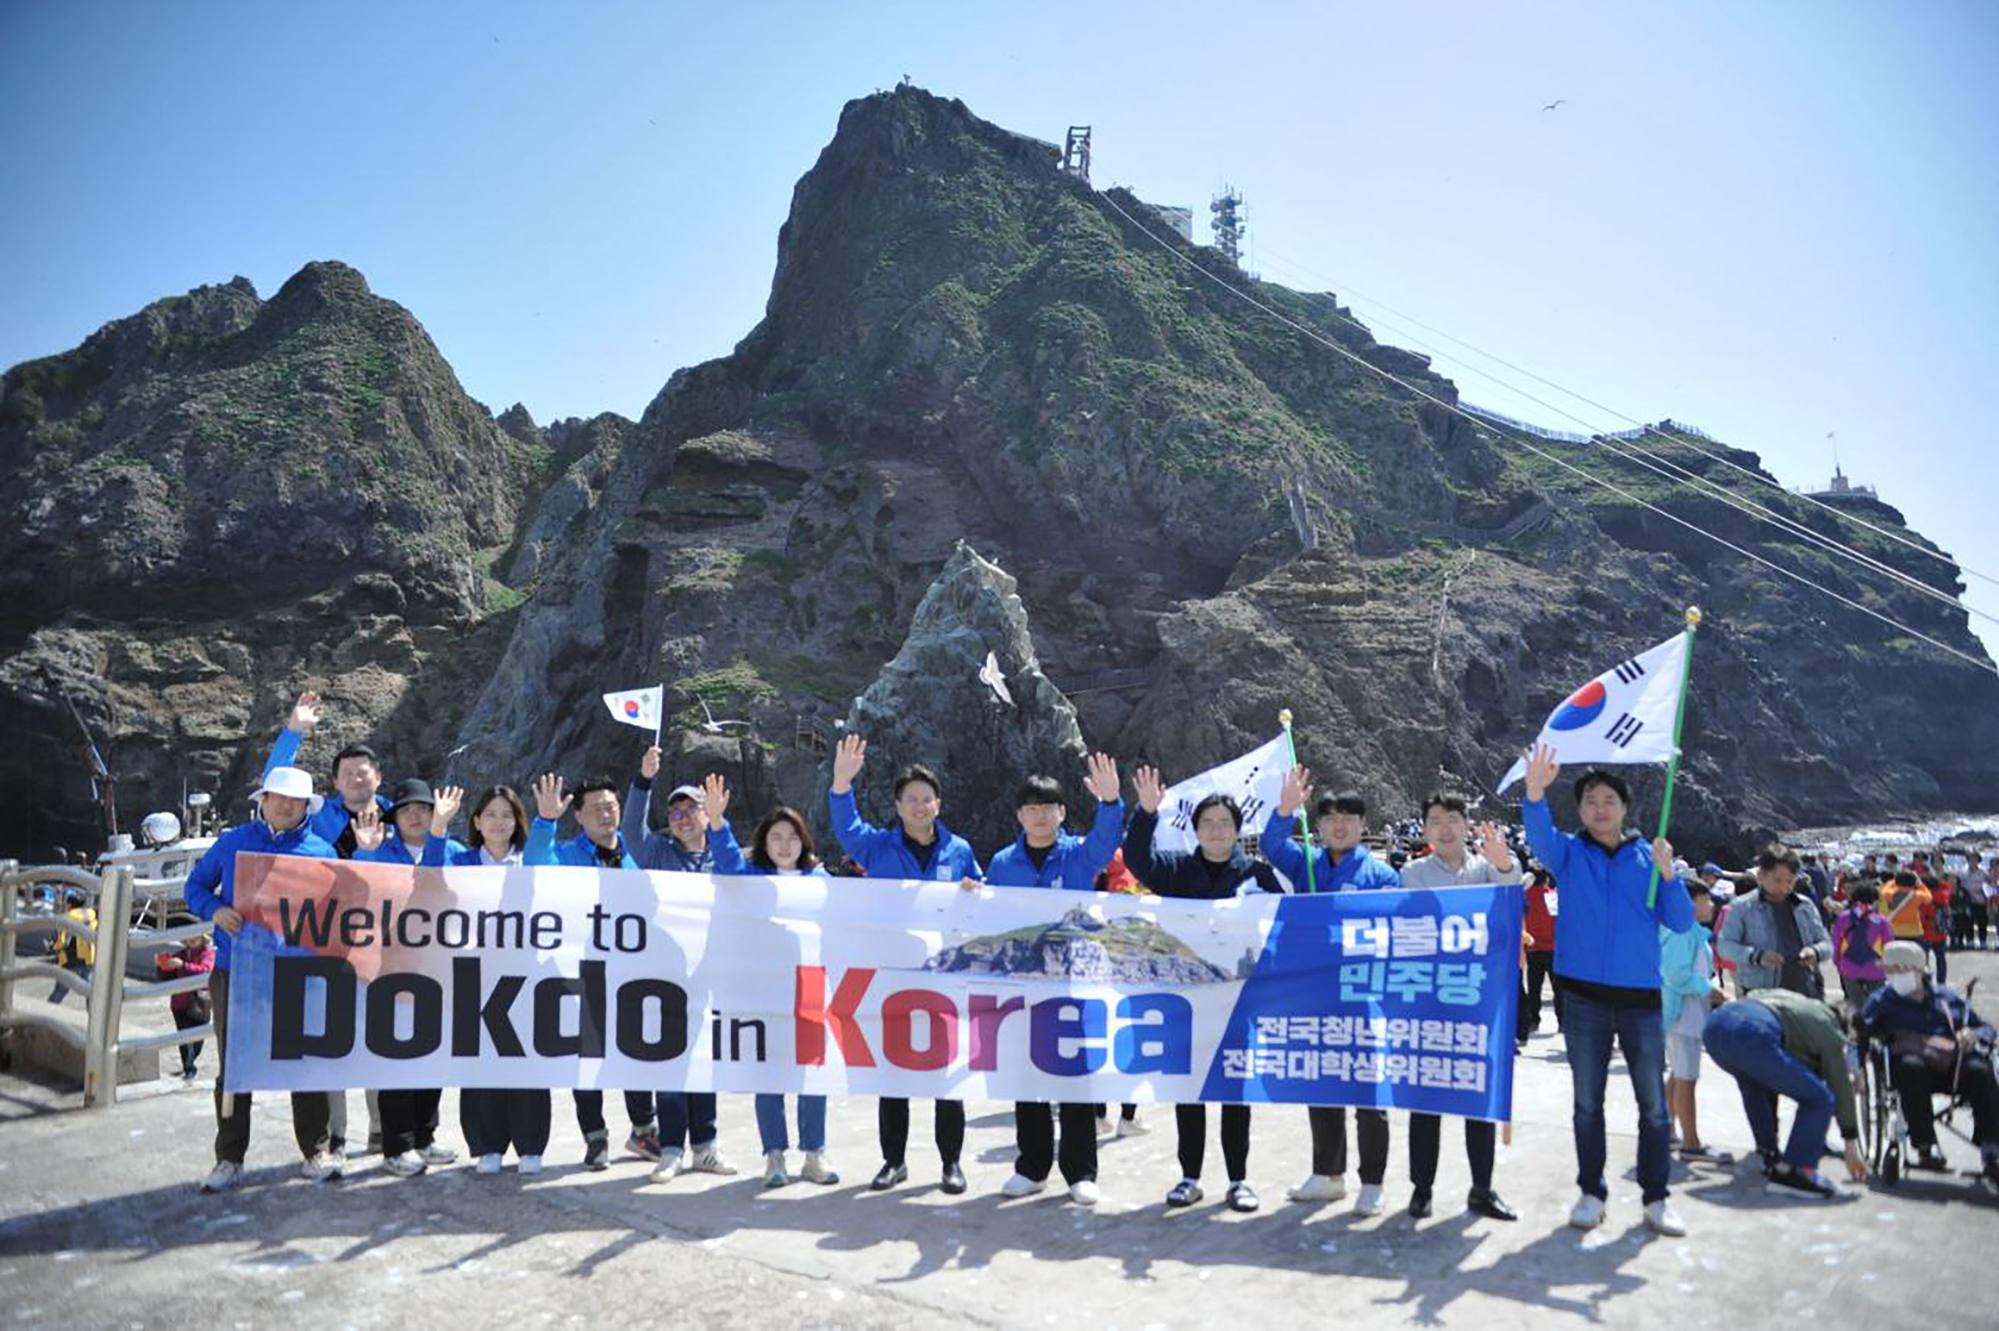 جنوبی کوریا کے سیاستدان جیون یونگ گی کے دفتر کا عملہ متنازع جزیروں پر ایک تصویر لے رہا ہے۔ فوٹو: اے ایف پی